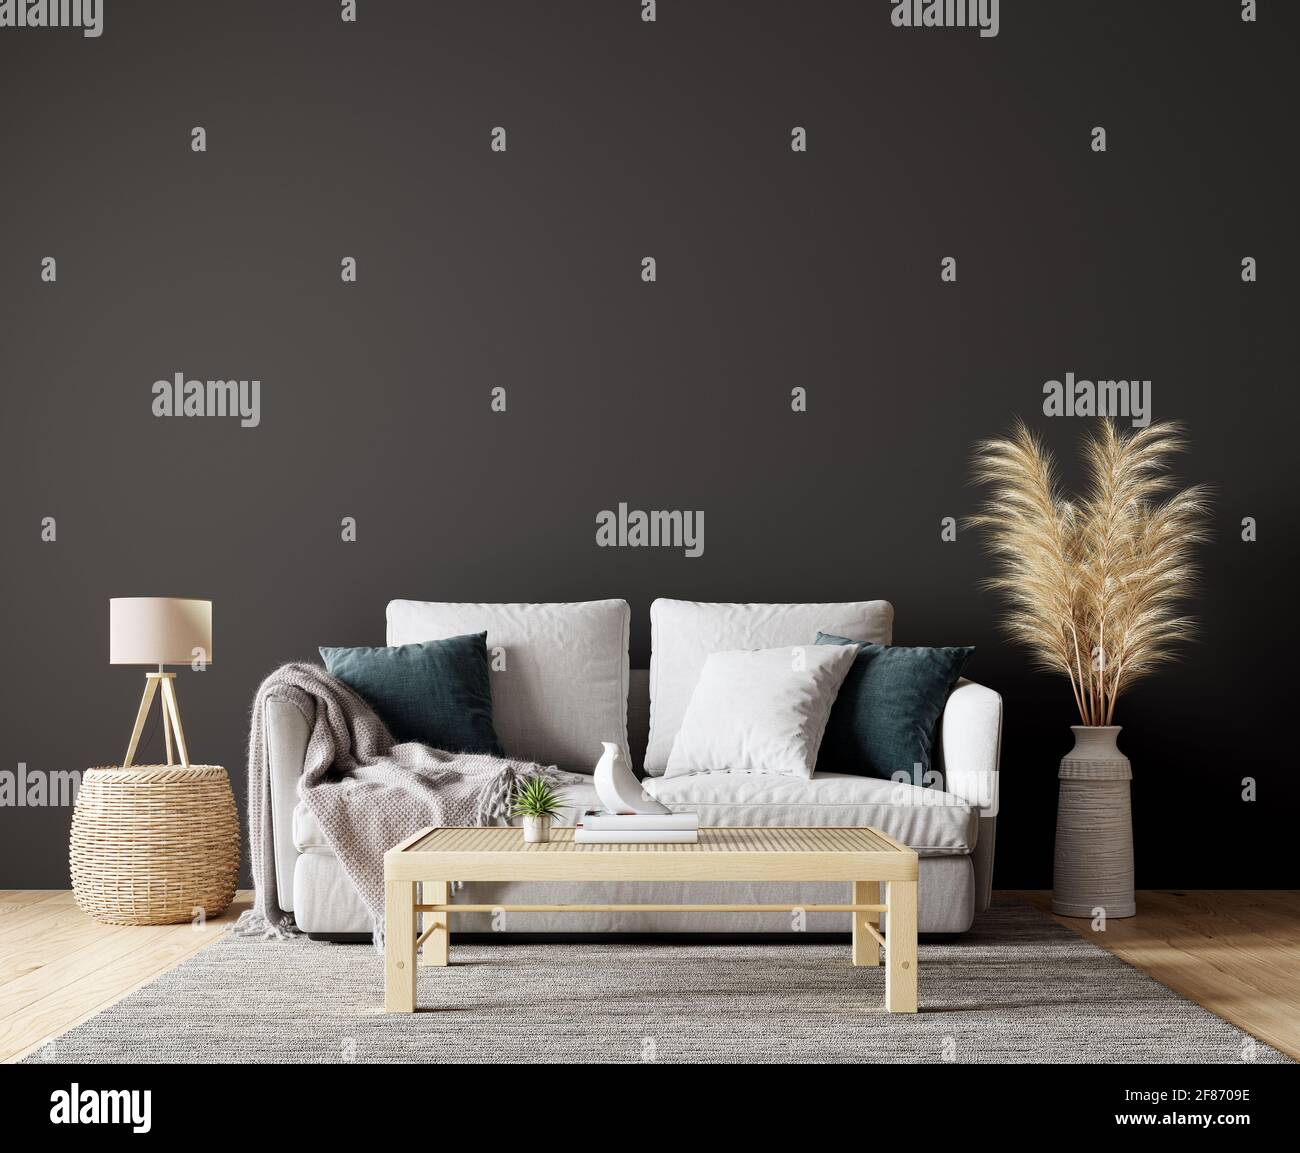 Interni dal design moderno del soggiorno in colori naturali con decorazione di piante asciutte e vuoto nero mock su sfondo parete Rendering 3D Foto Stock